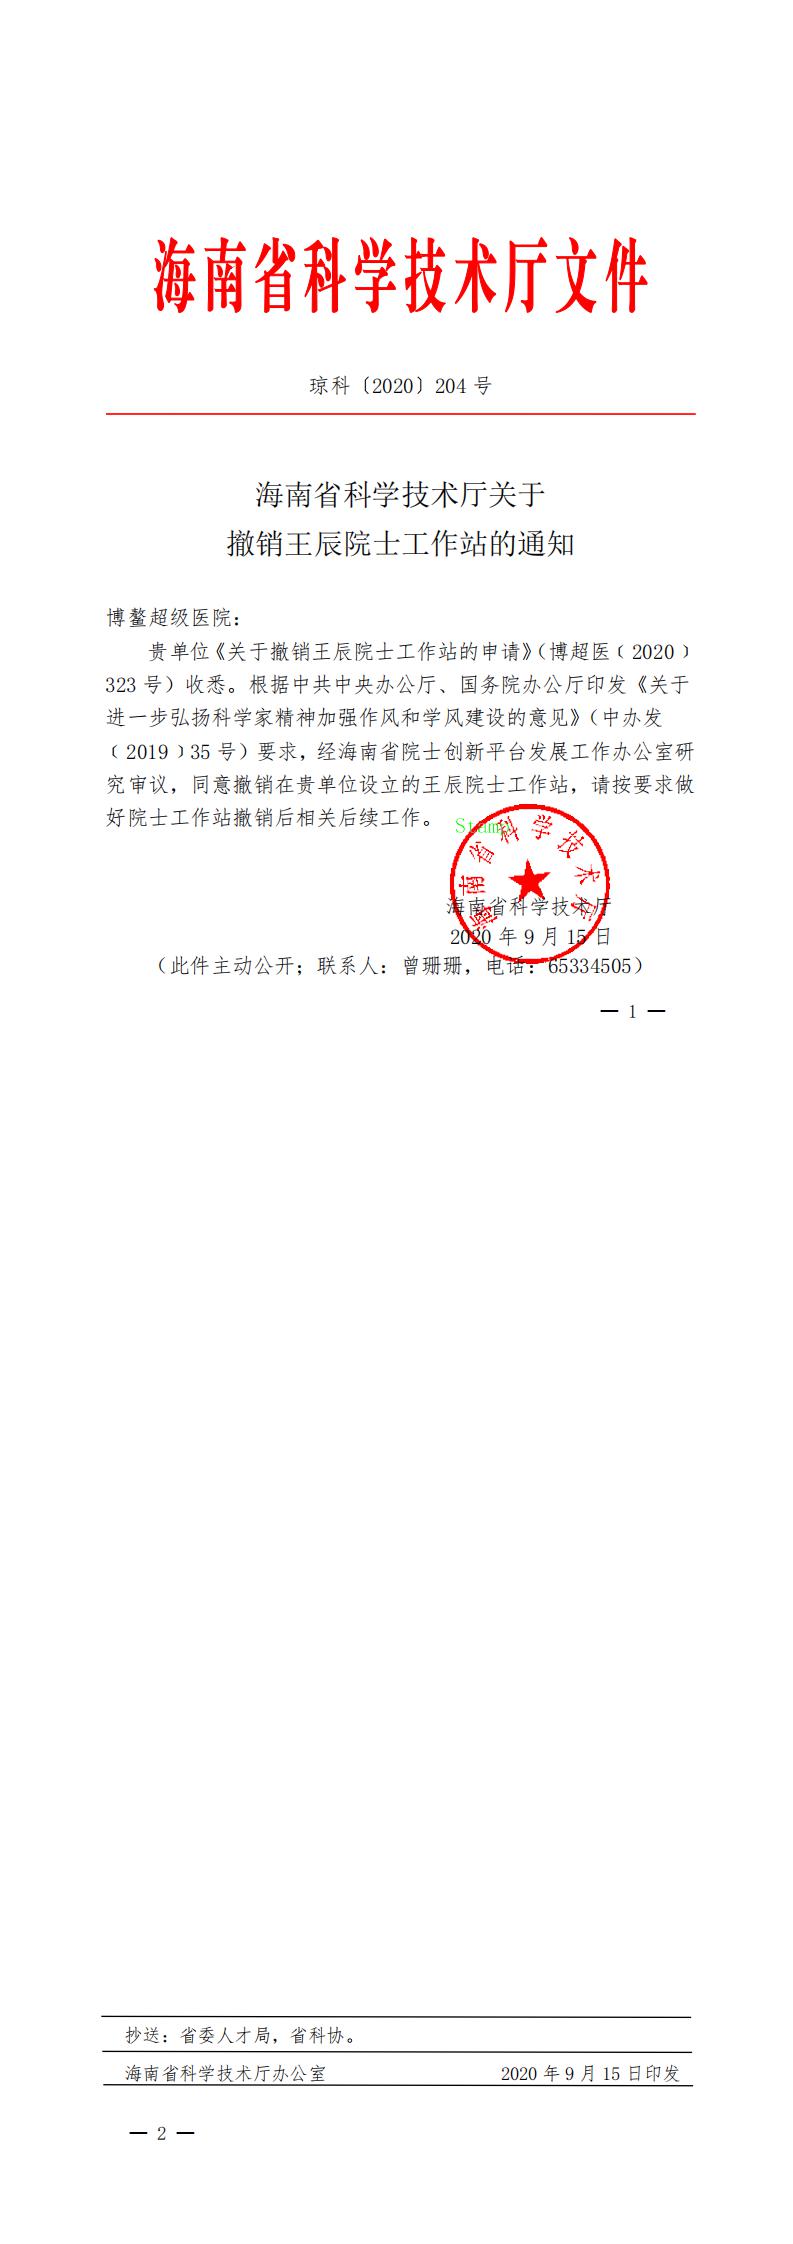 8.海南省科学技术厅关于撤销王辰院士工作站的通知_0.jpg